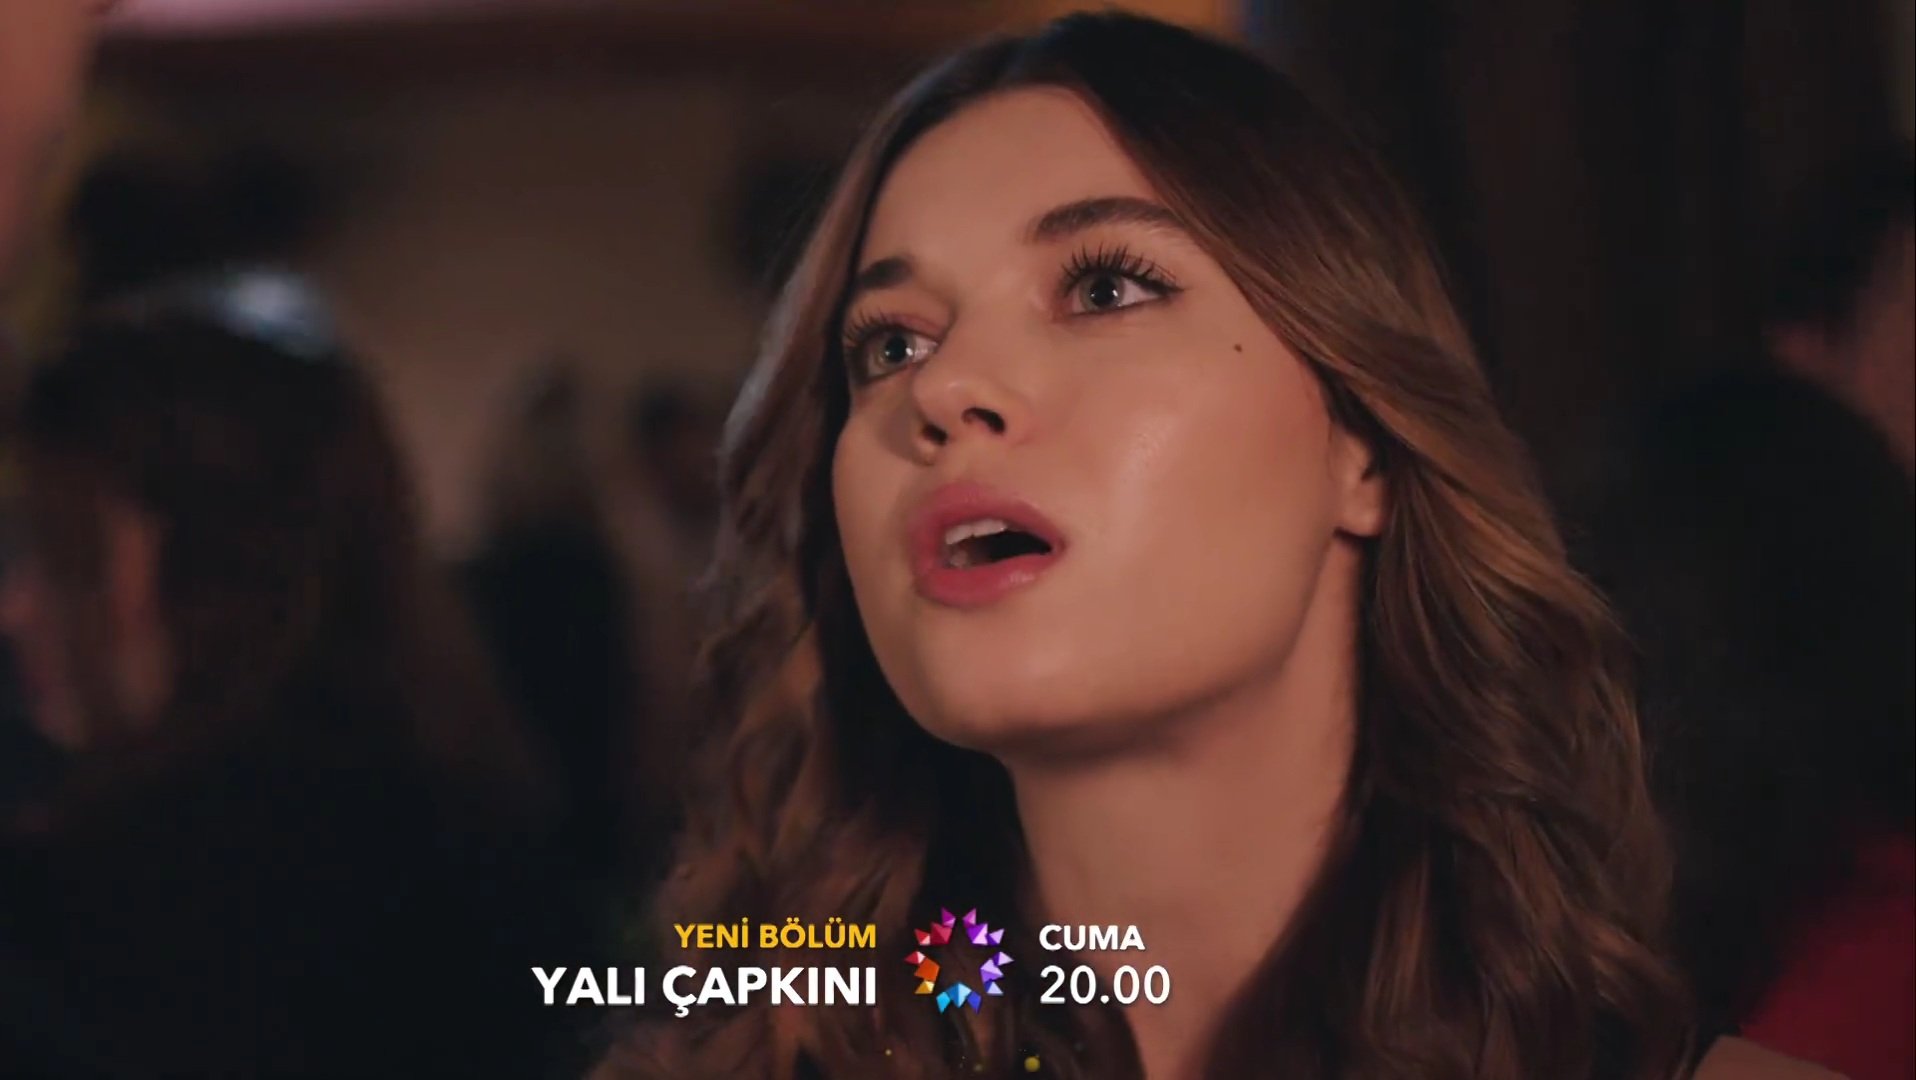 Já se encontra o episódio 13 legendado de #YaliÇapkini disponível no